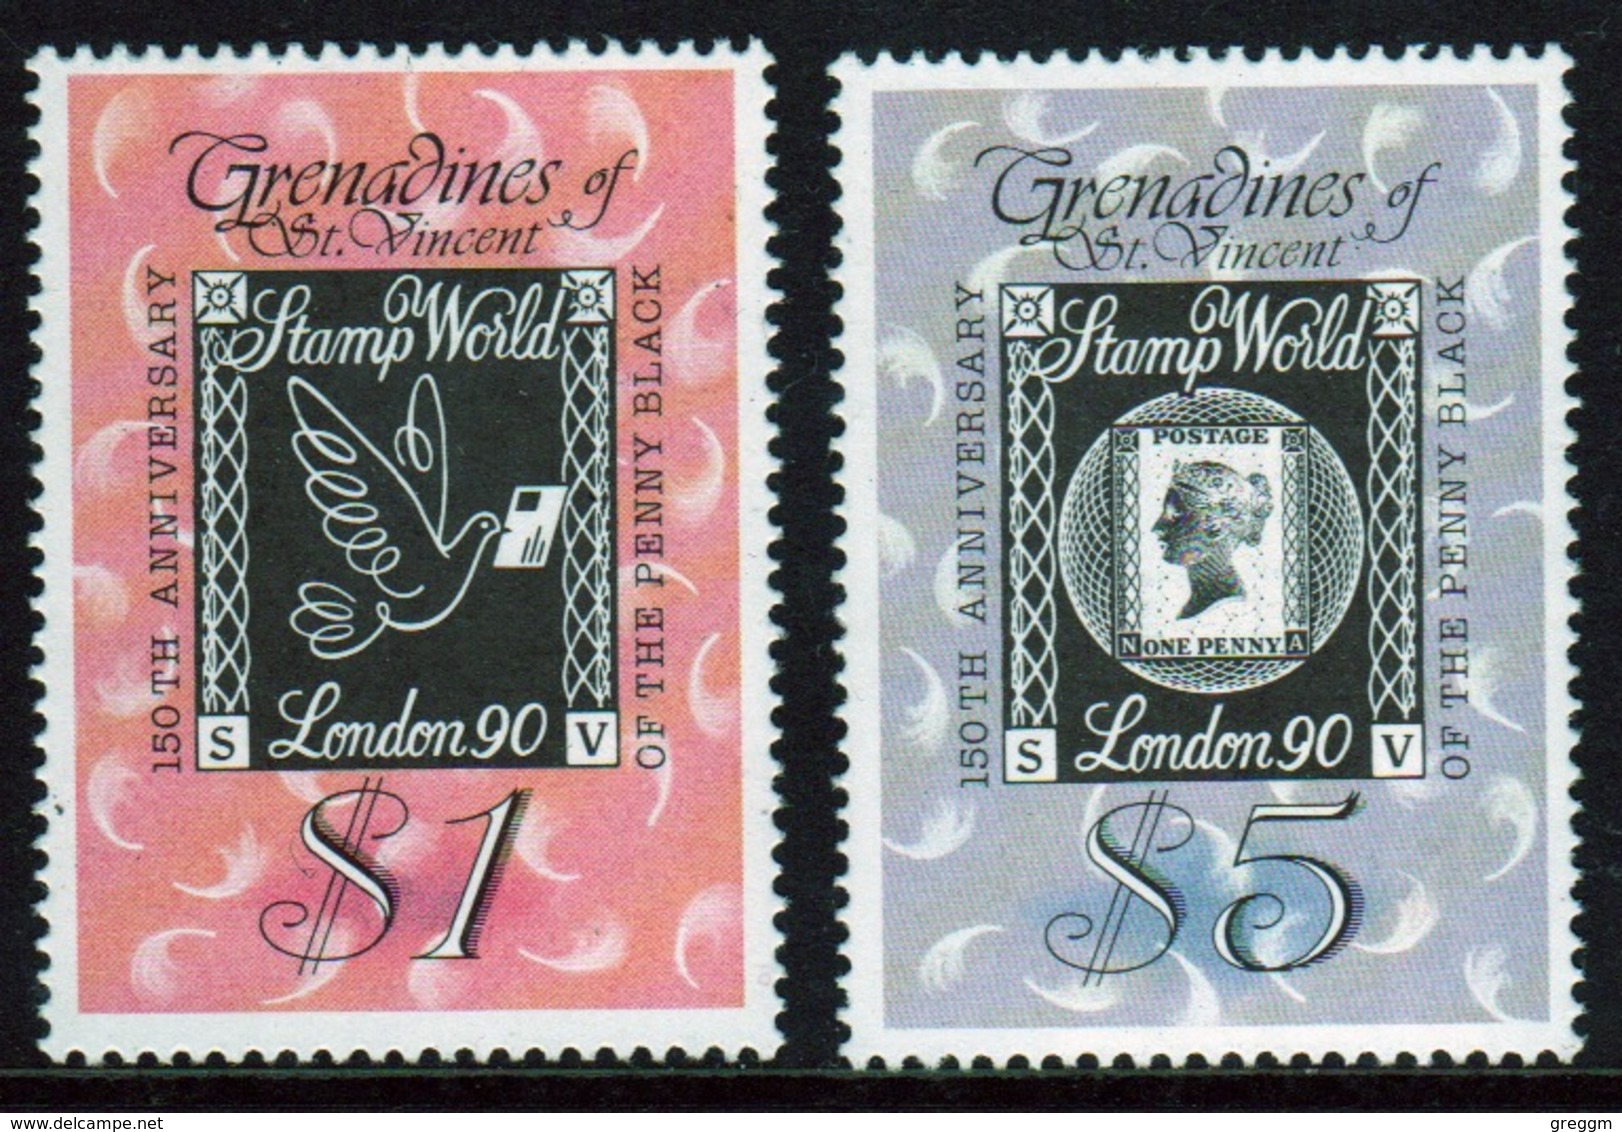 St.Vincent & Grenadines 1990 Set Of Stamps Commemorating Stamp World London 90. - St.Vincent & Grenadines